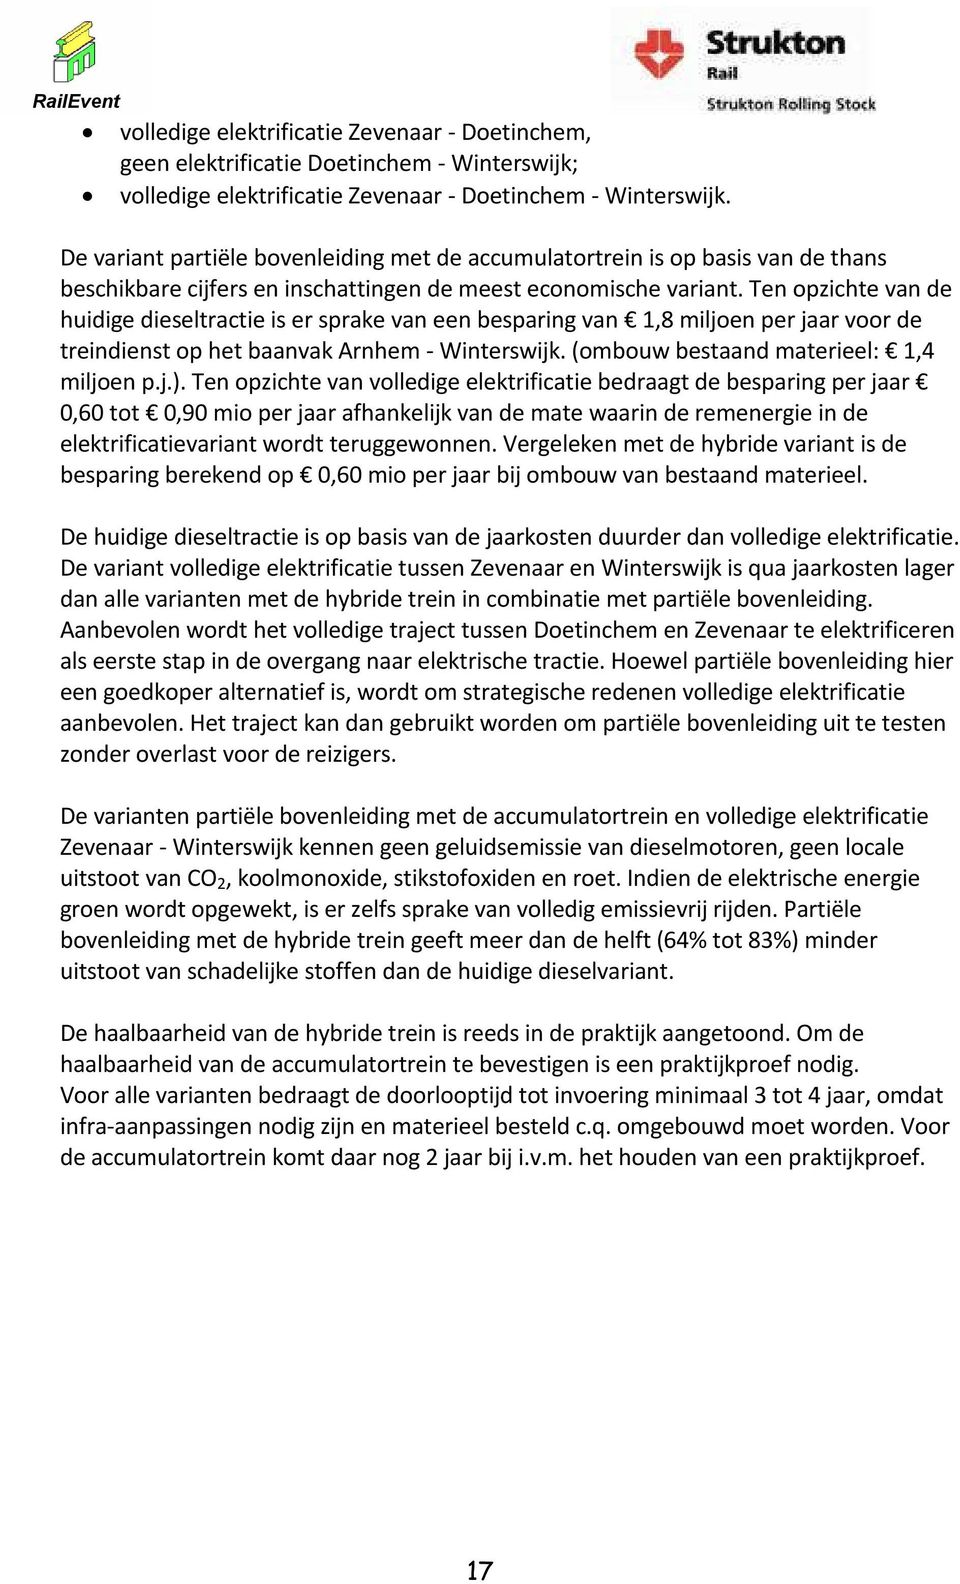 Ten opzichte van de huidige dieseltractie is er sprake van een besparing van 1,8 miljoen per jaar voor de treindienst op het baanvak Arnhem - Winterswijk. (ombouw bestaand materieel: 1,4 miljoen p.j.).